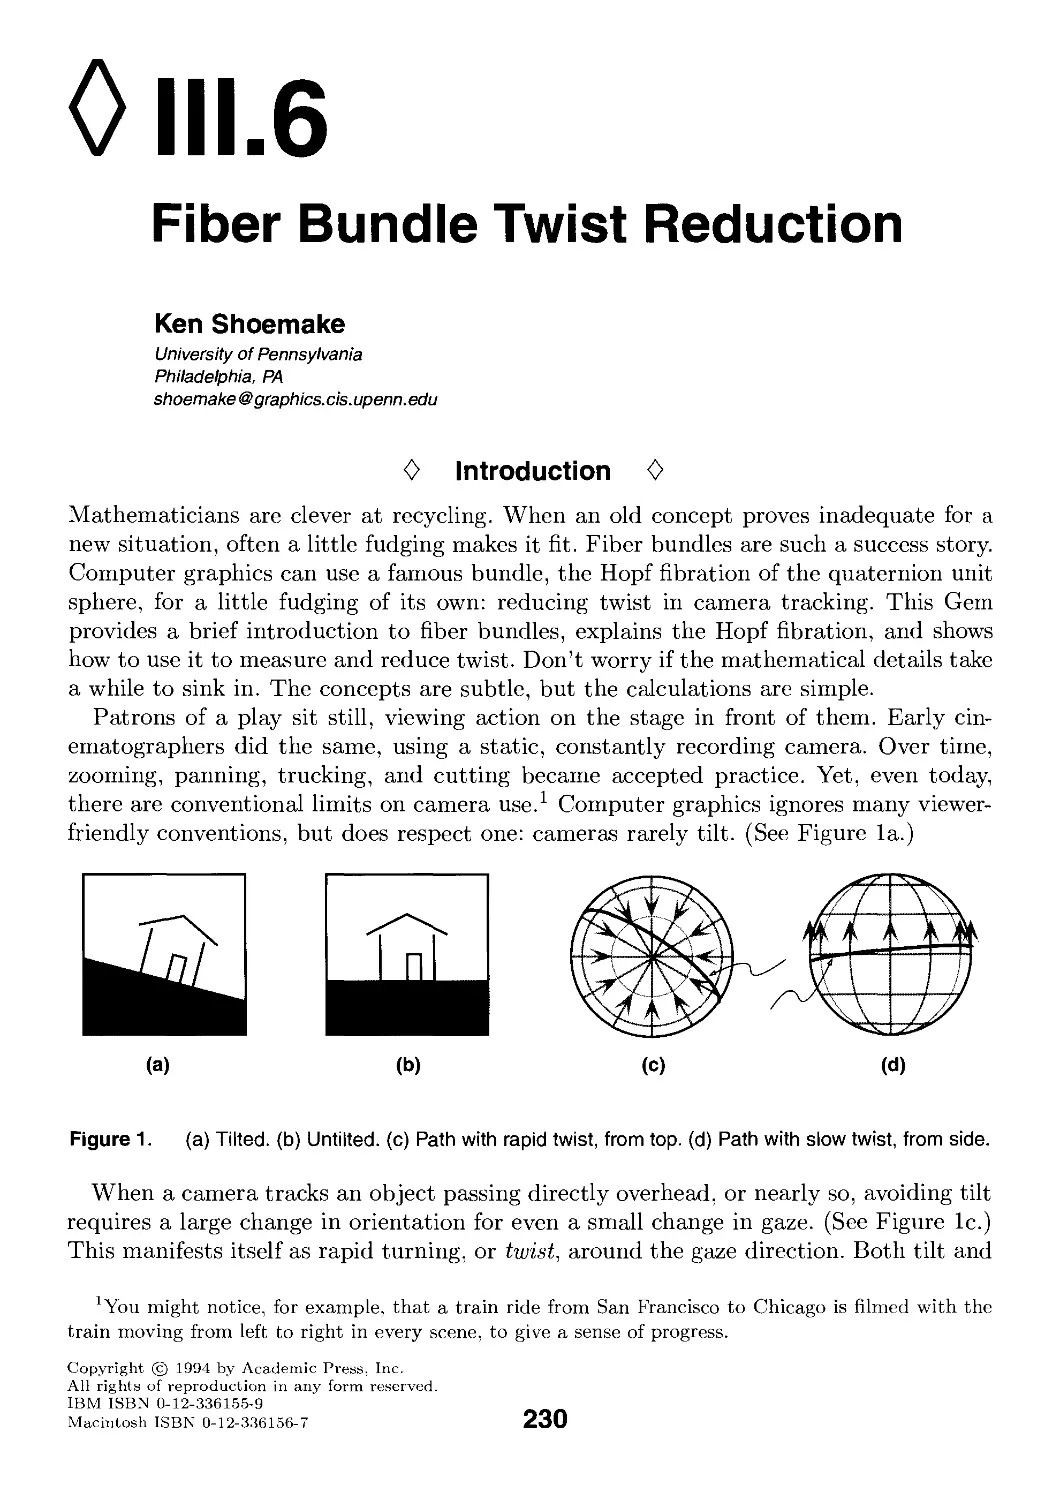 III.6. Fiber Bundle Twist Reduction by Ken Shoemake